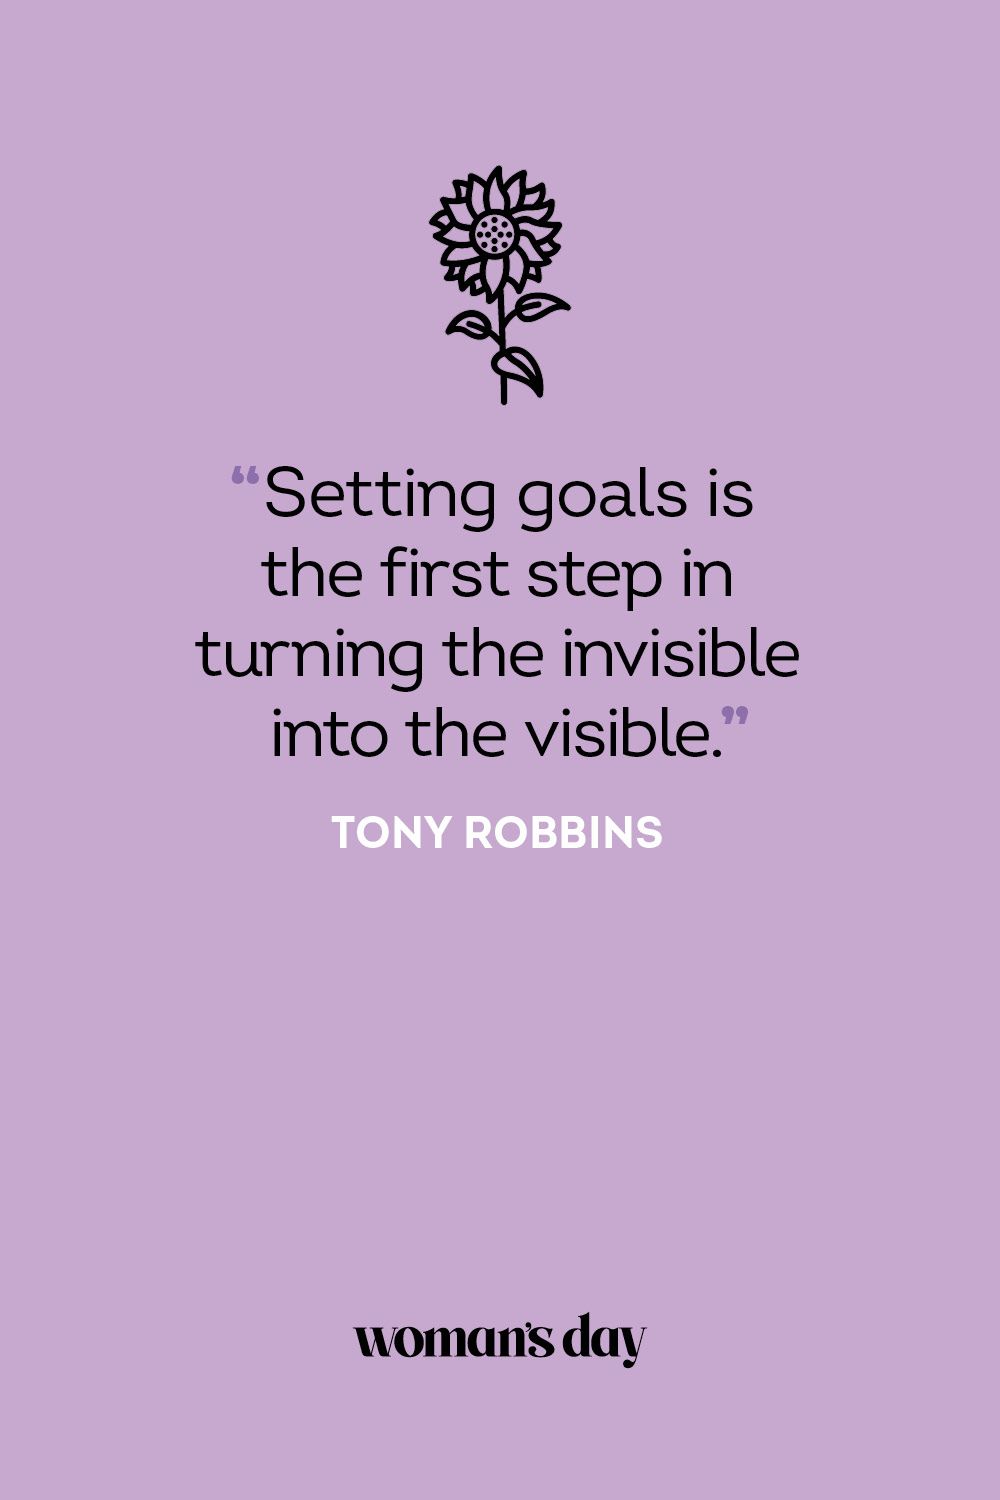 achieving goals quotes tumblr